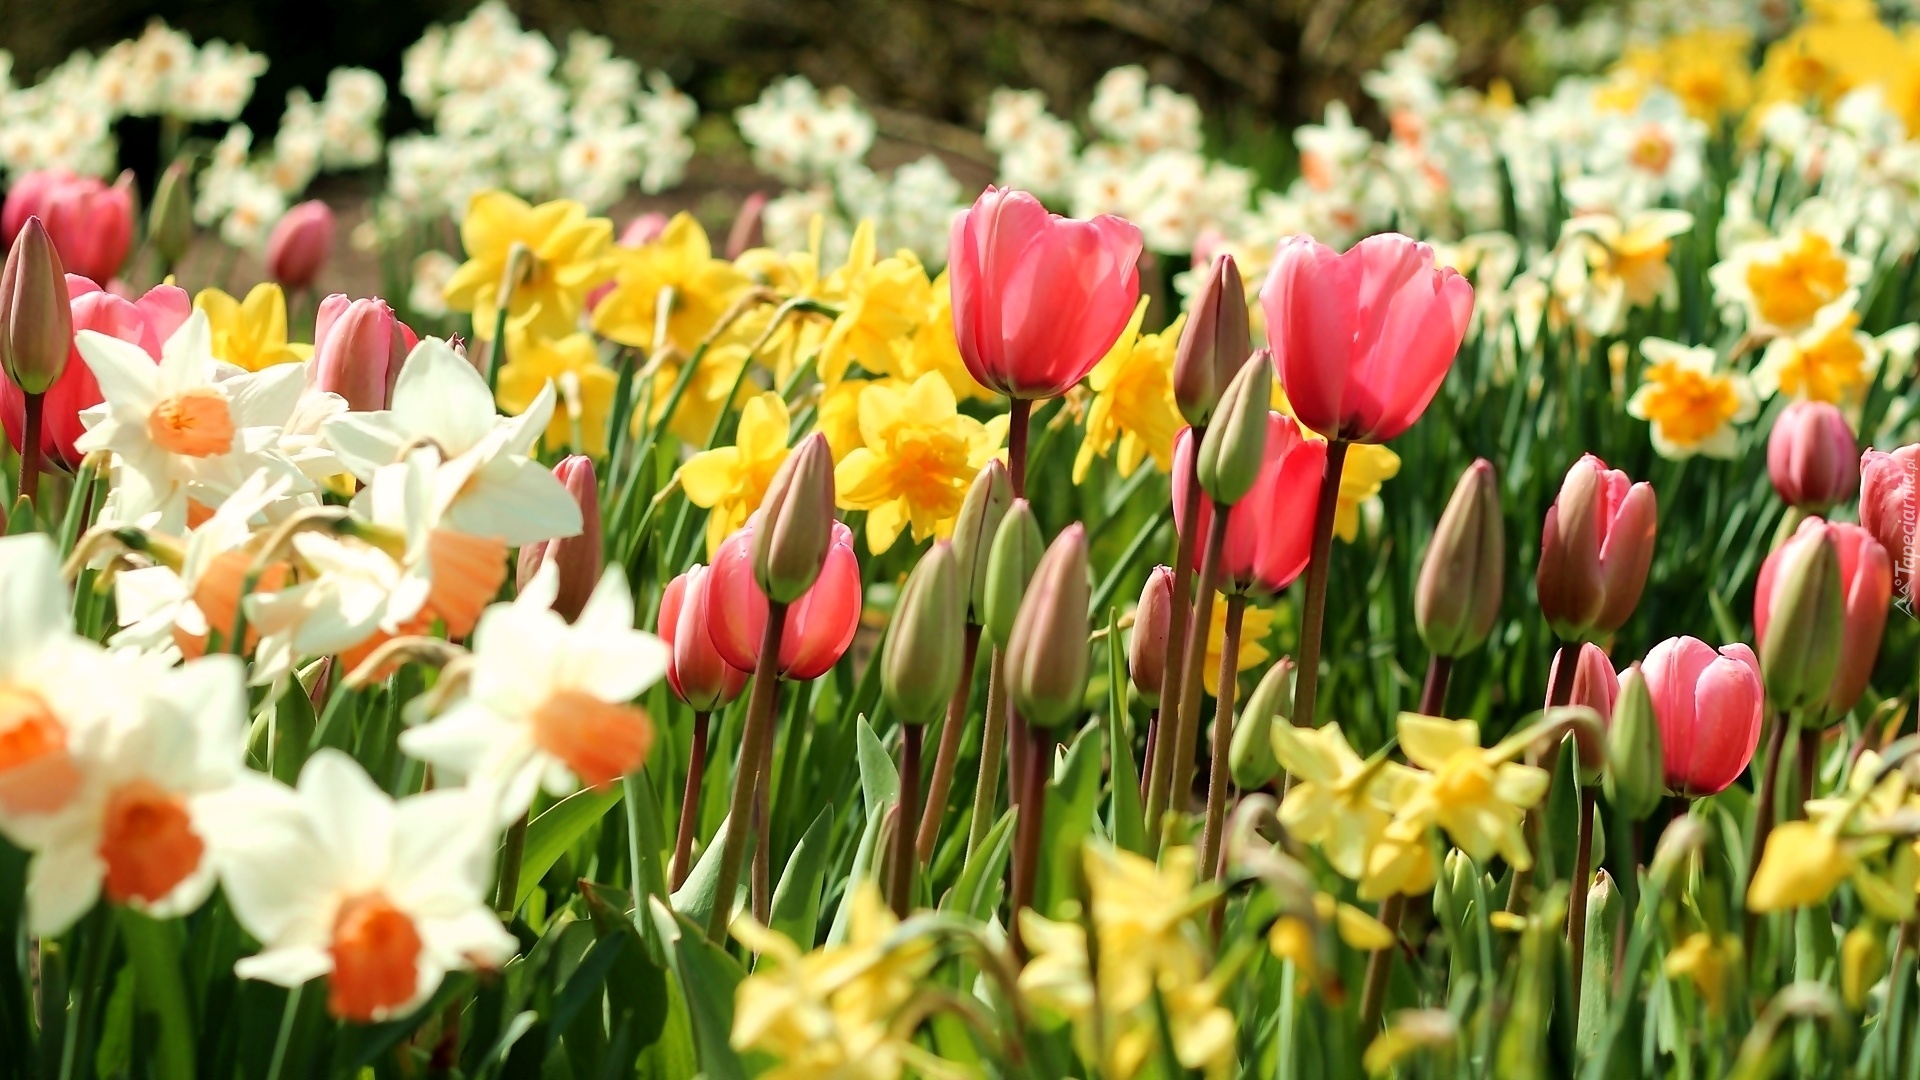 Wiosenne Kwiaty Nazwy Kwiatów Wiosenne, Kwiaty, Tulipany, Narcyze, Żonkile